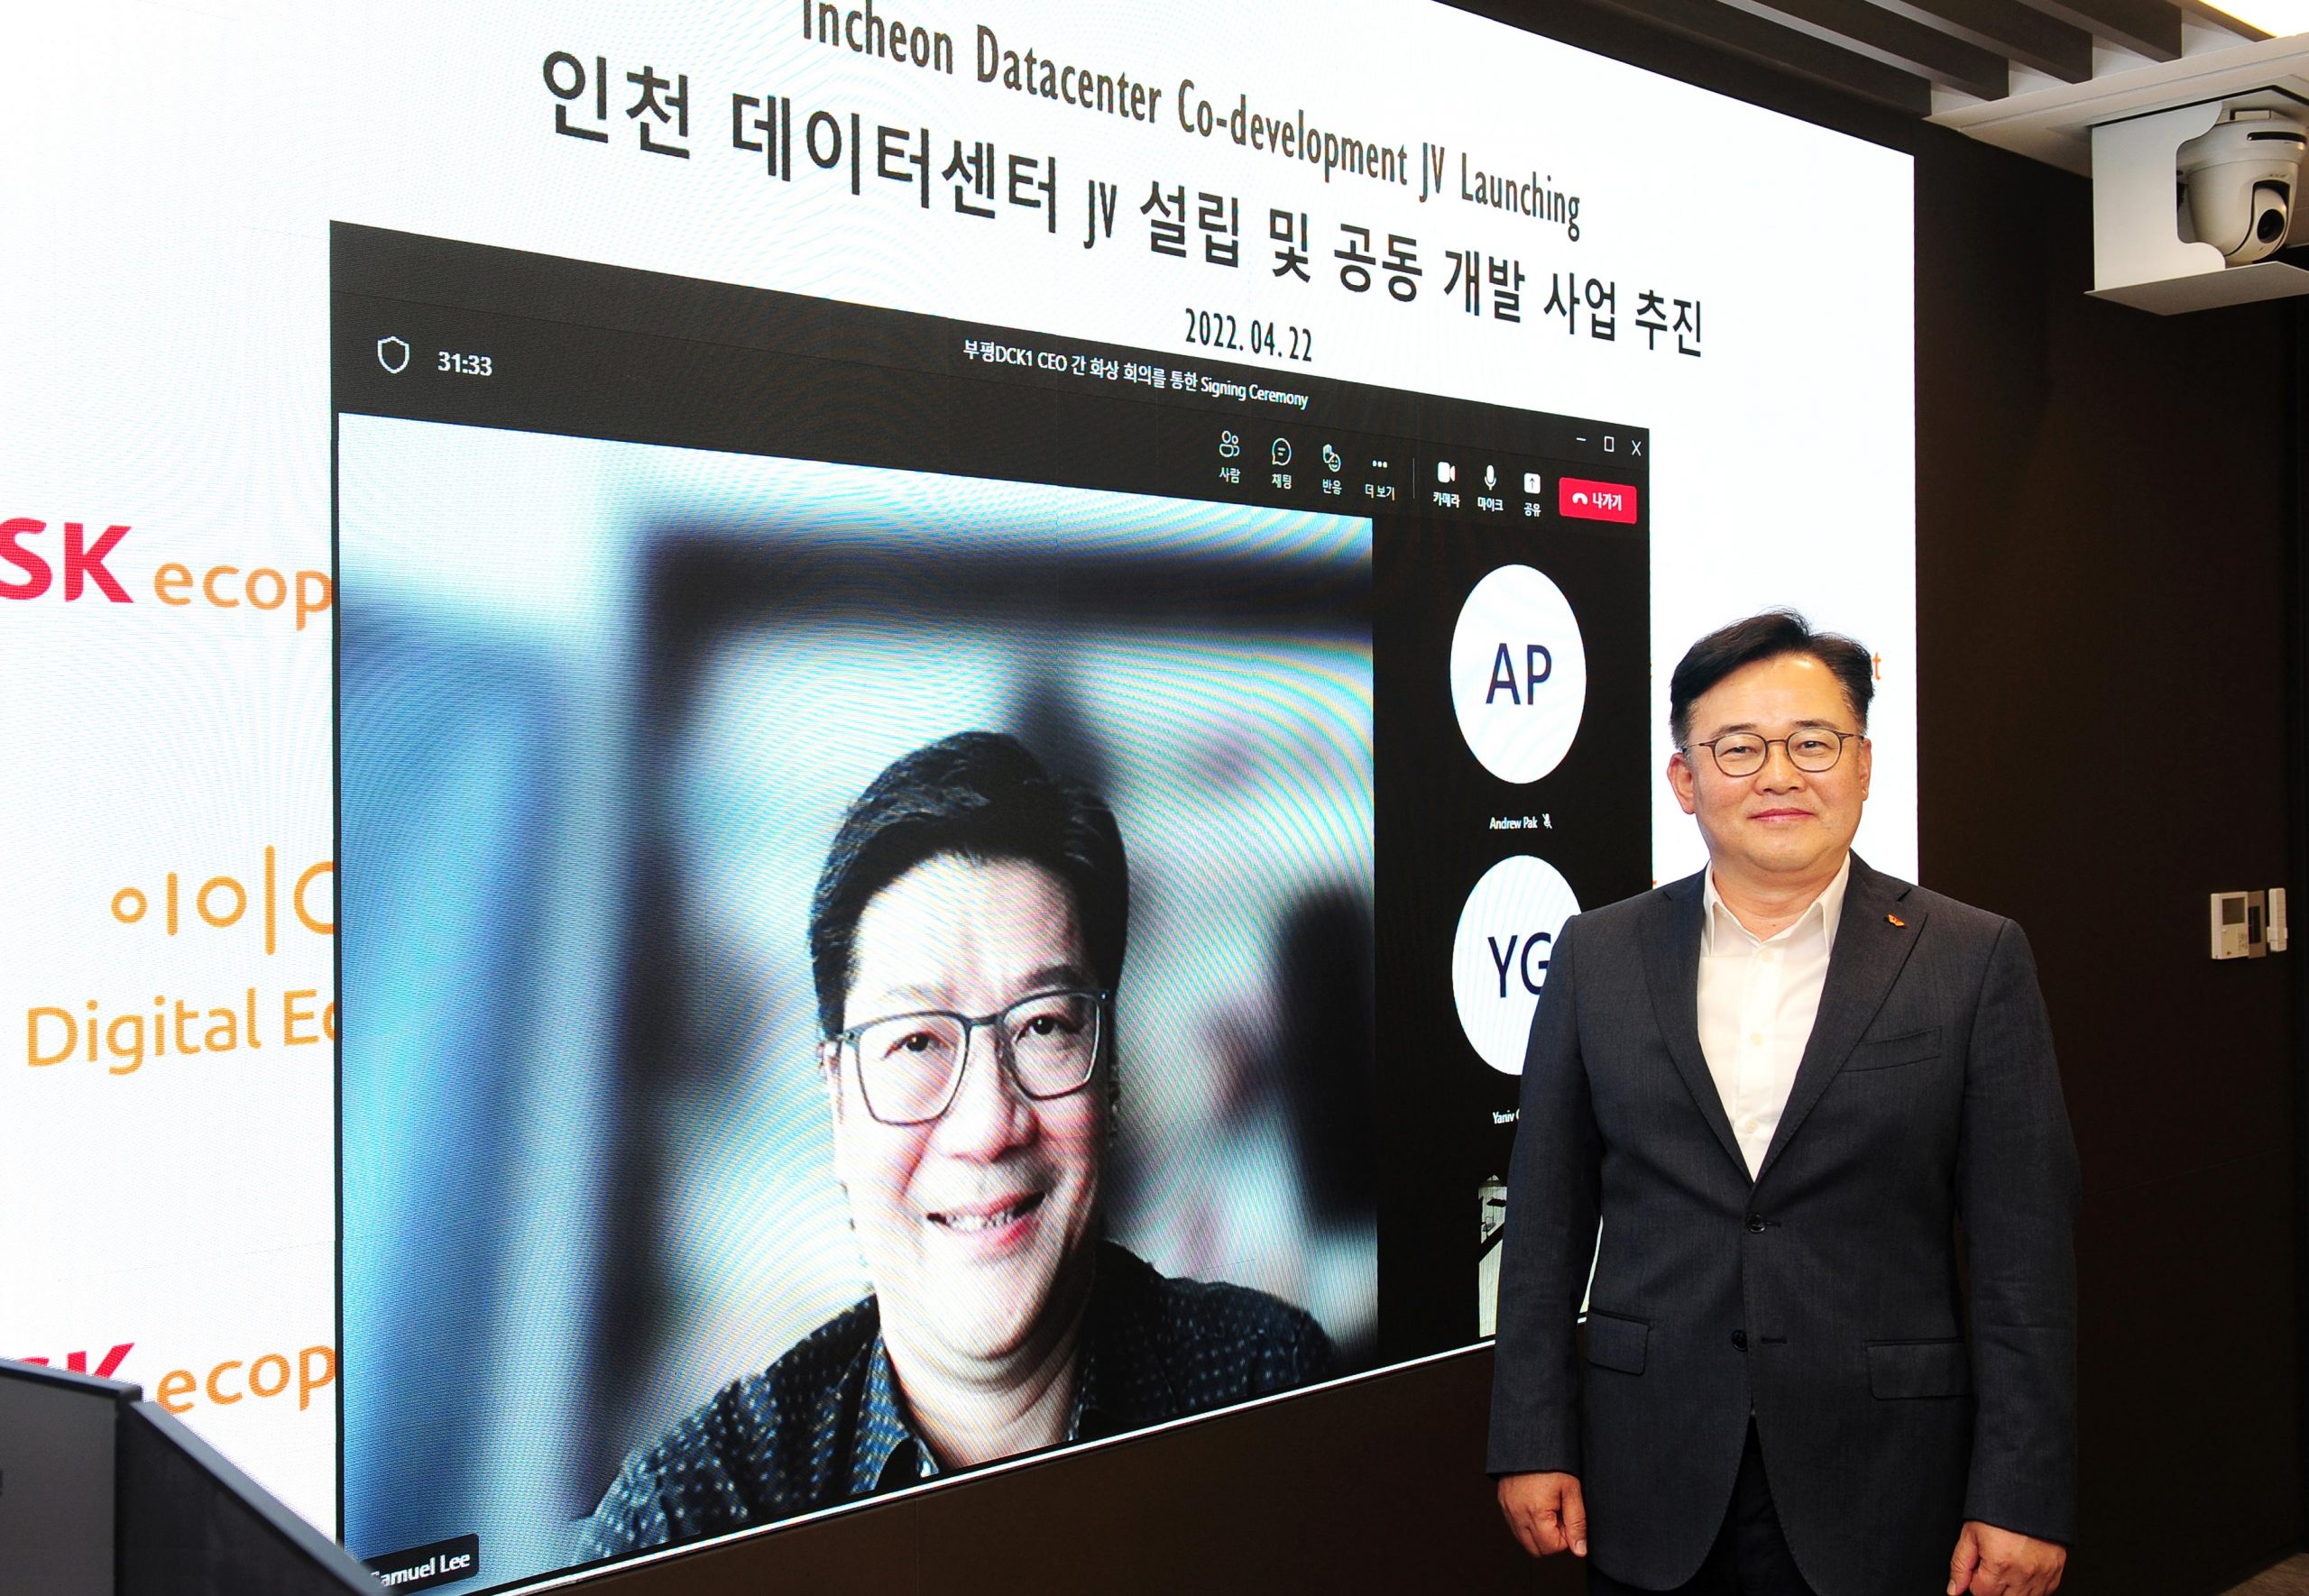 SK에코플랜트는 지난 22일 서울 종로구 수송사옥에서 디지털엣지(Digital Edge)와 ‘부평 데이터센터 공동 개발’ 사업을 위한 합작법인(JV) 출범 행사를 열었다고 밝혔다. 박경일 SK에코플랜트 사장(오른쪽)과 사무엘 리(Samuel Lee) 디지털엣지 CEO가 화상 회의를 통해 기념촬영을 하고 있는 모습.